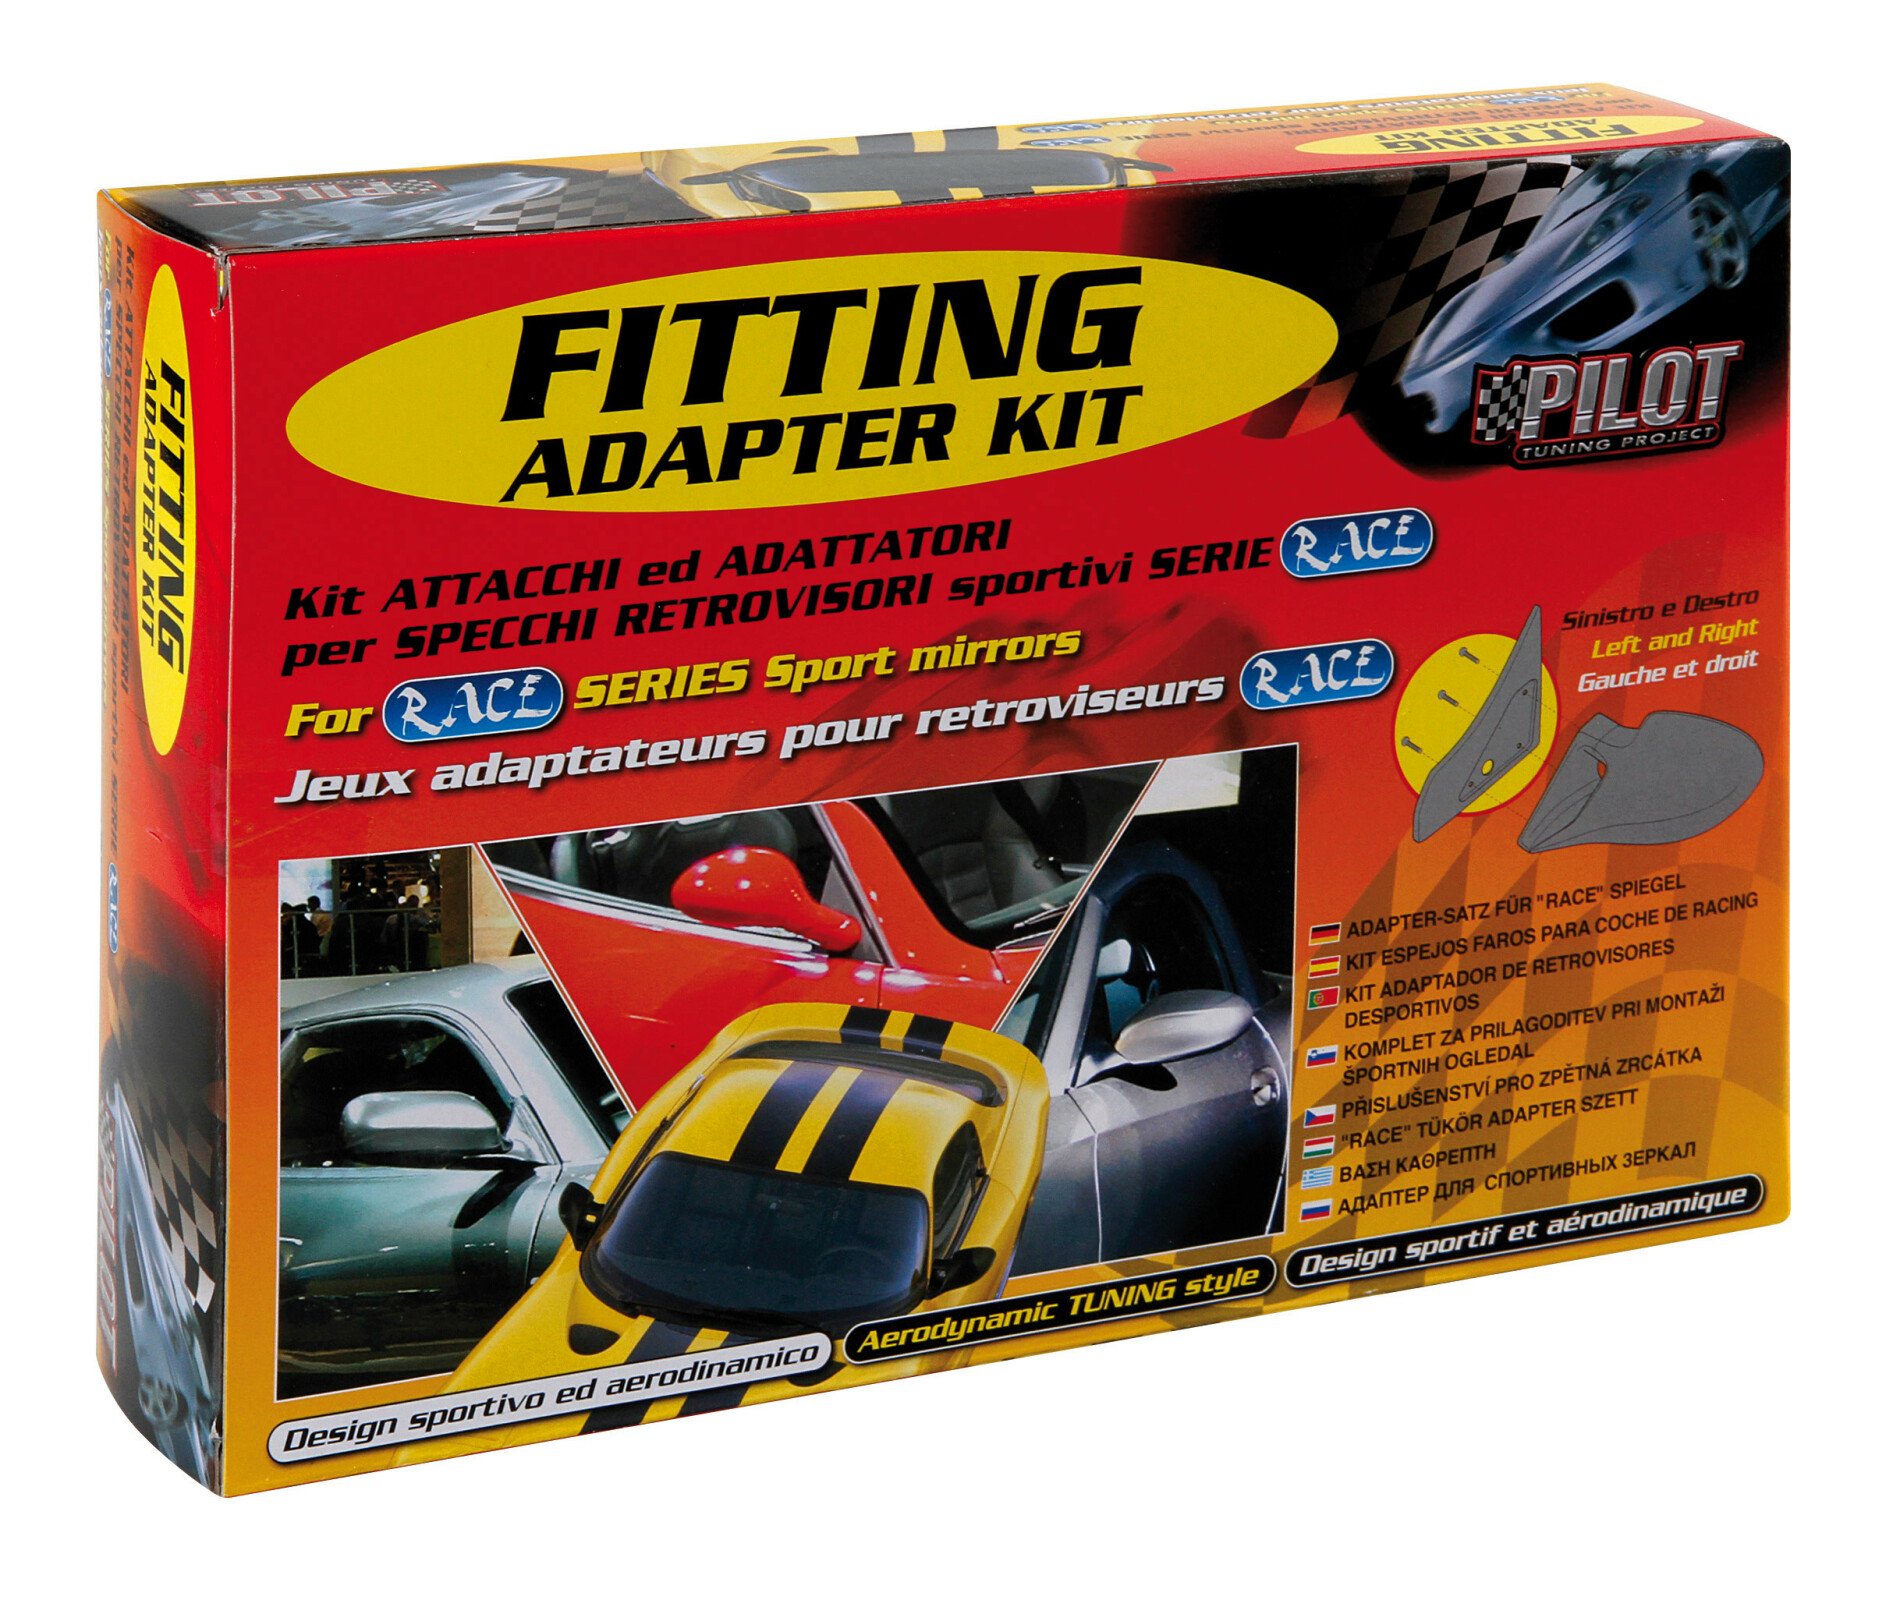 Fitting adapter kit - Volkswagen Golf II (Jetta) (8/83-12/92) thumb